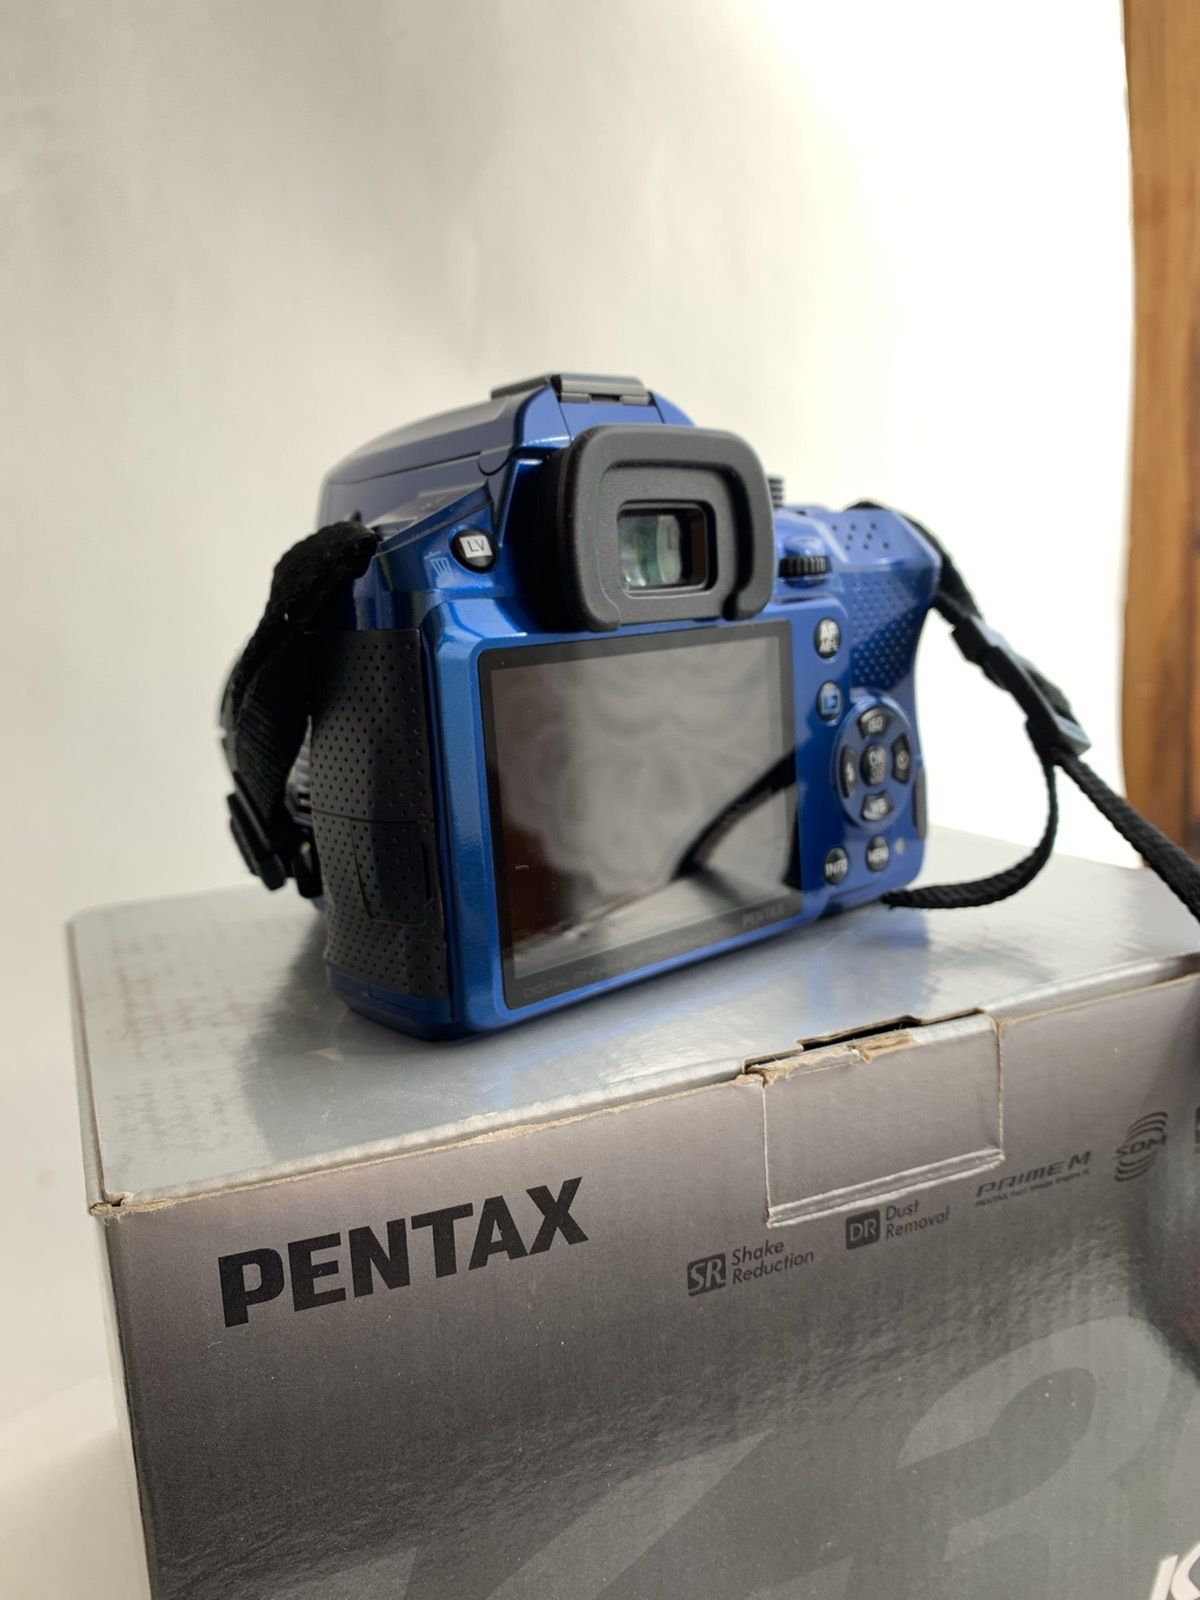 Продам Pentax k-30 проф фотоаппарат и два объектива